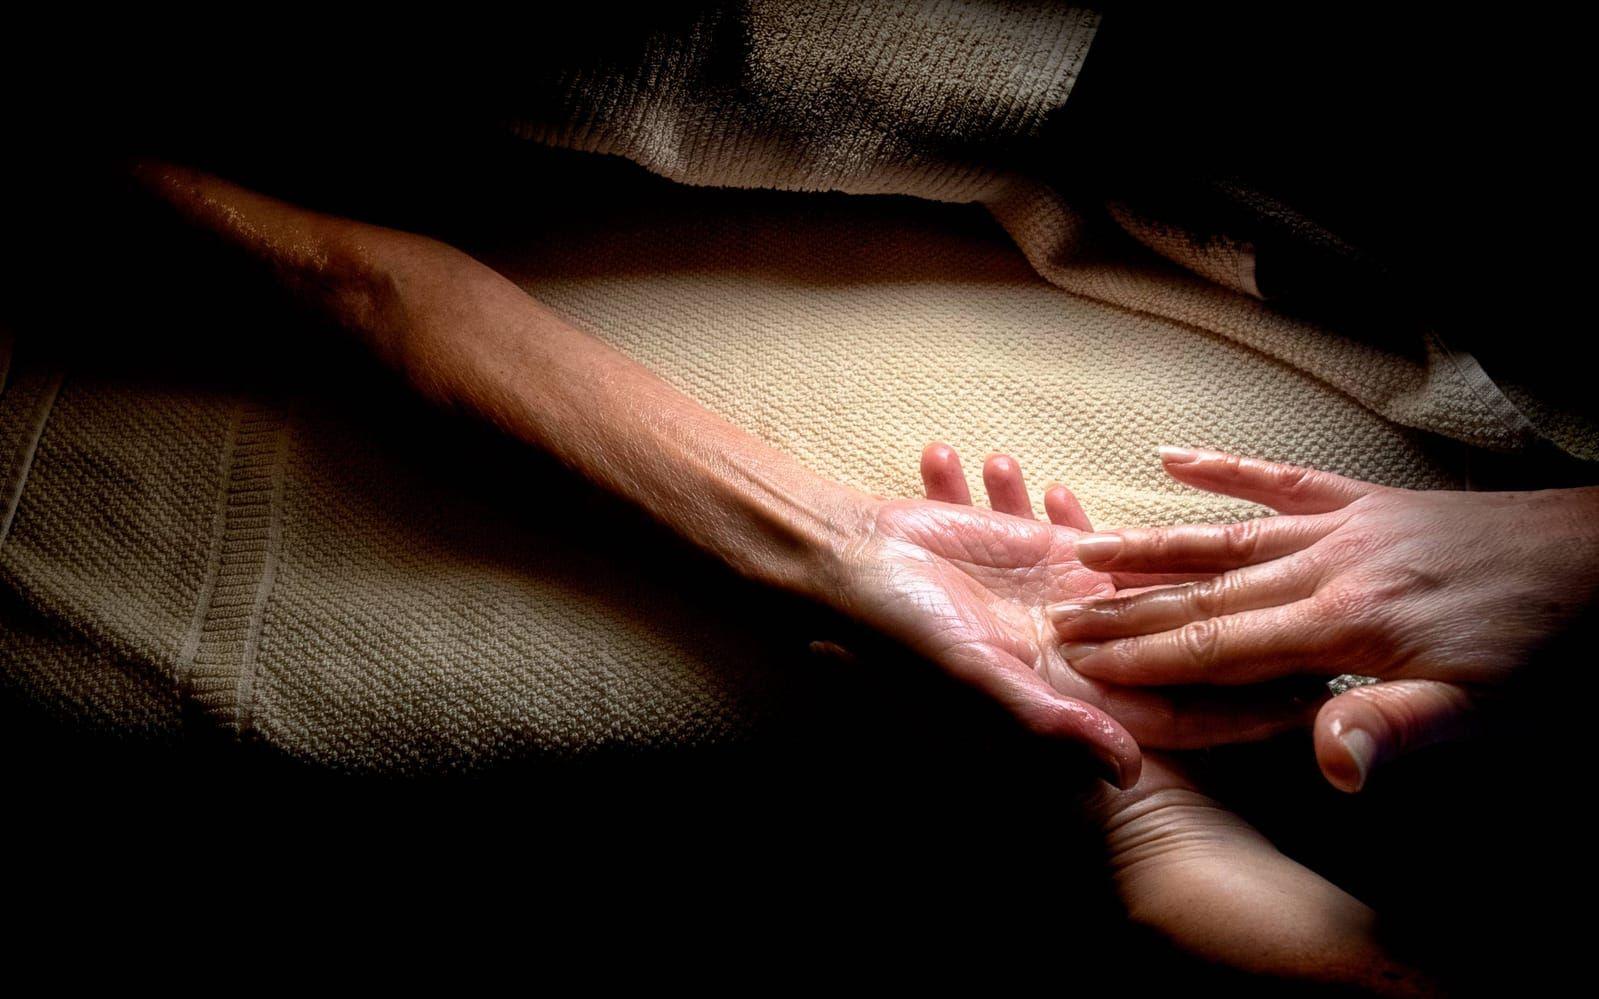 När någon rör vid oss aktiveras känsliga receptorer i huden. Taktil massage handlar om lugnande strykningar över hela kroppen för att lindra stress. Bild: Lisa Thanner